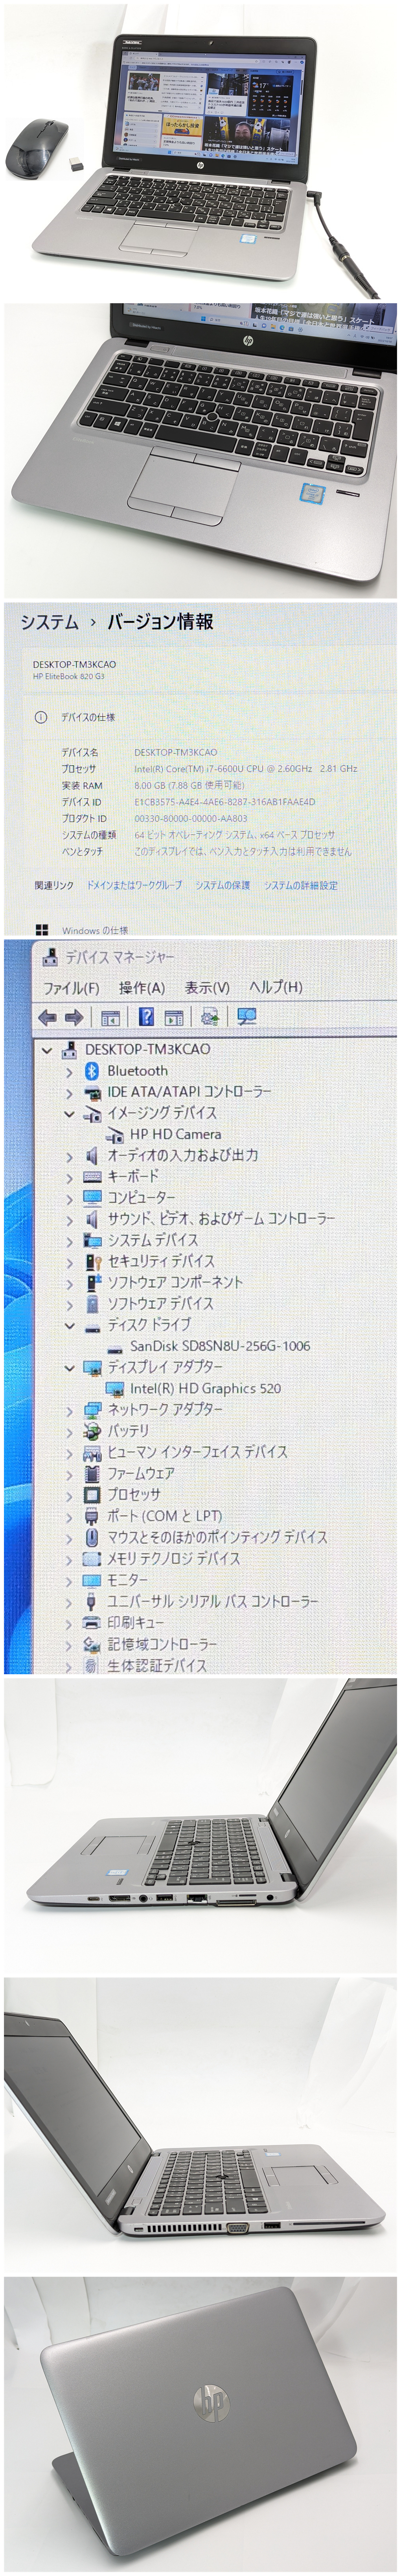 芸能人愛用 HP ノートPC 12.5型 新品無線マウス付き 驚き価格 820